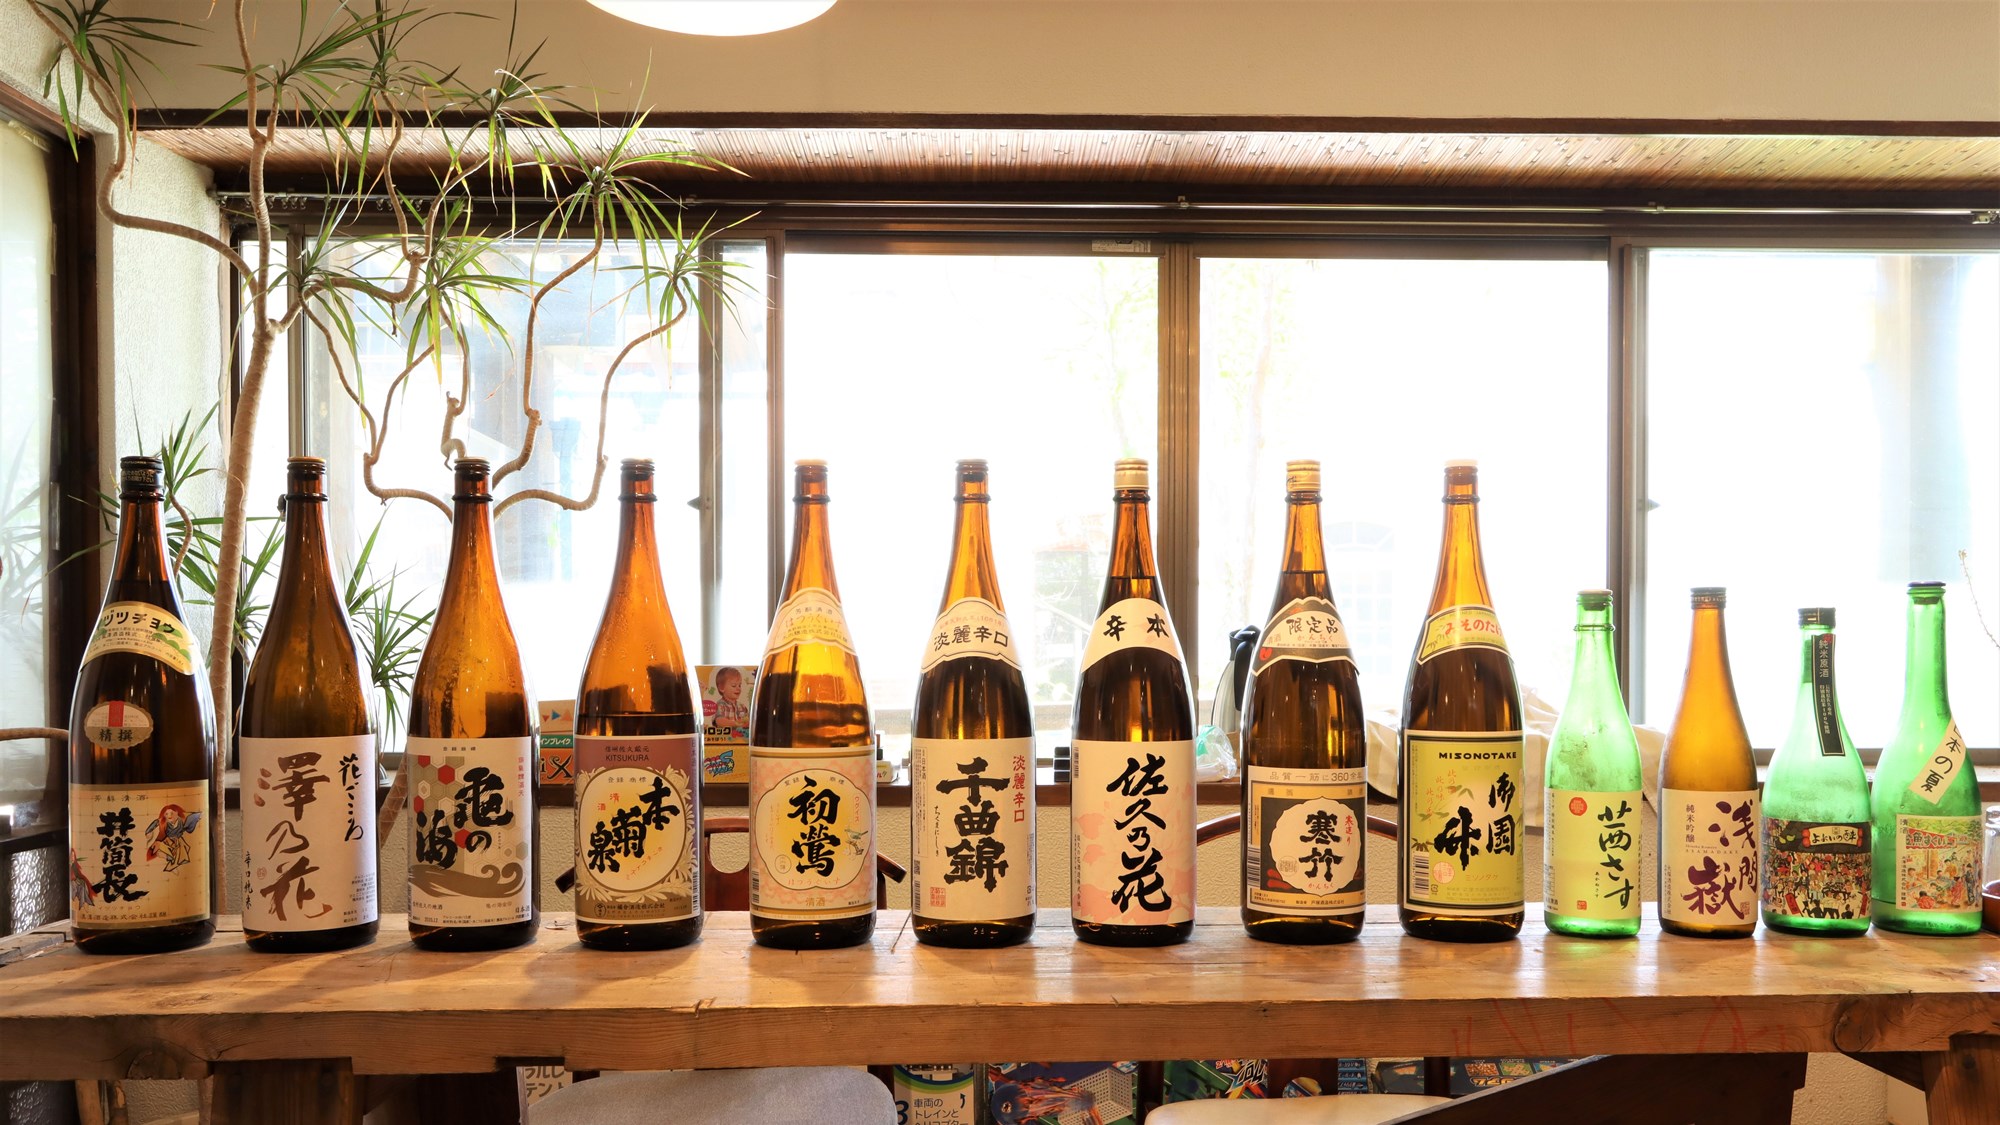 SAKU13☆佐久地域の13の酒蔵の若手経営者が共同で酒を作り上げる新ブランドです